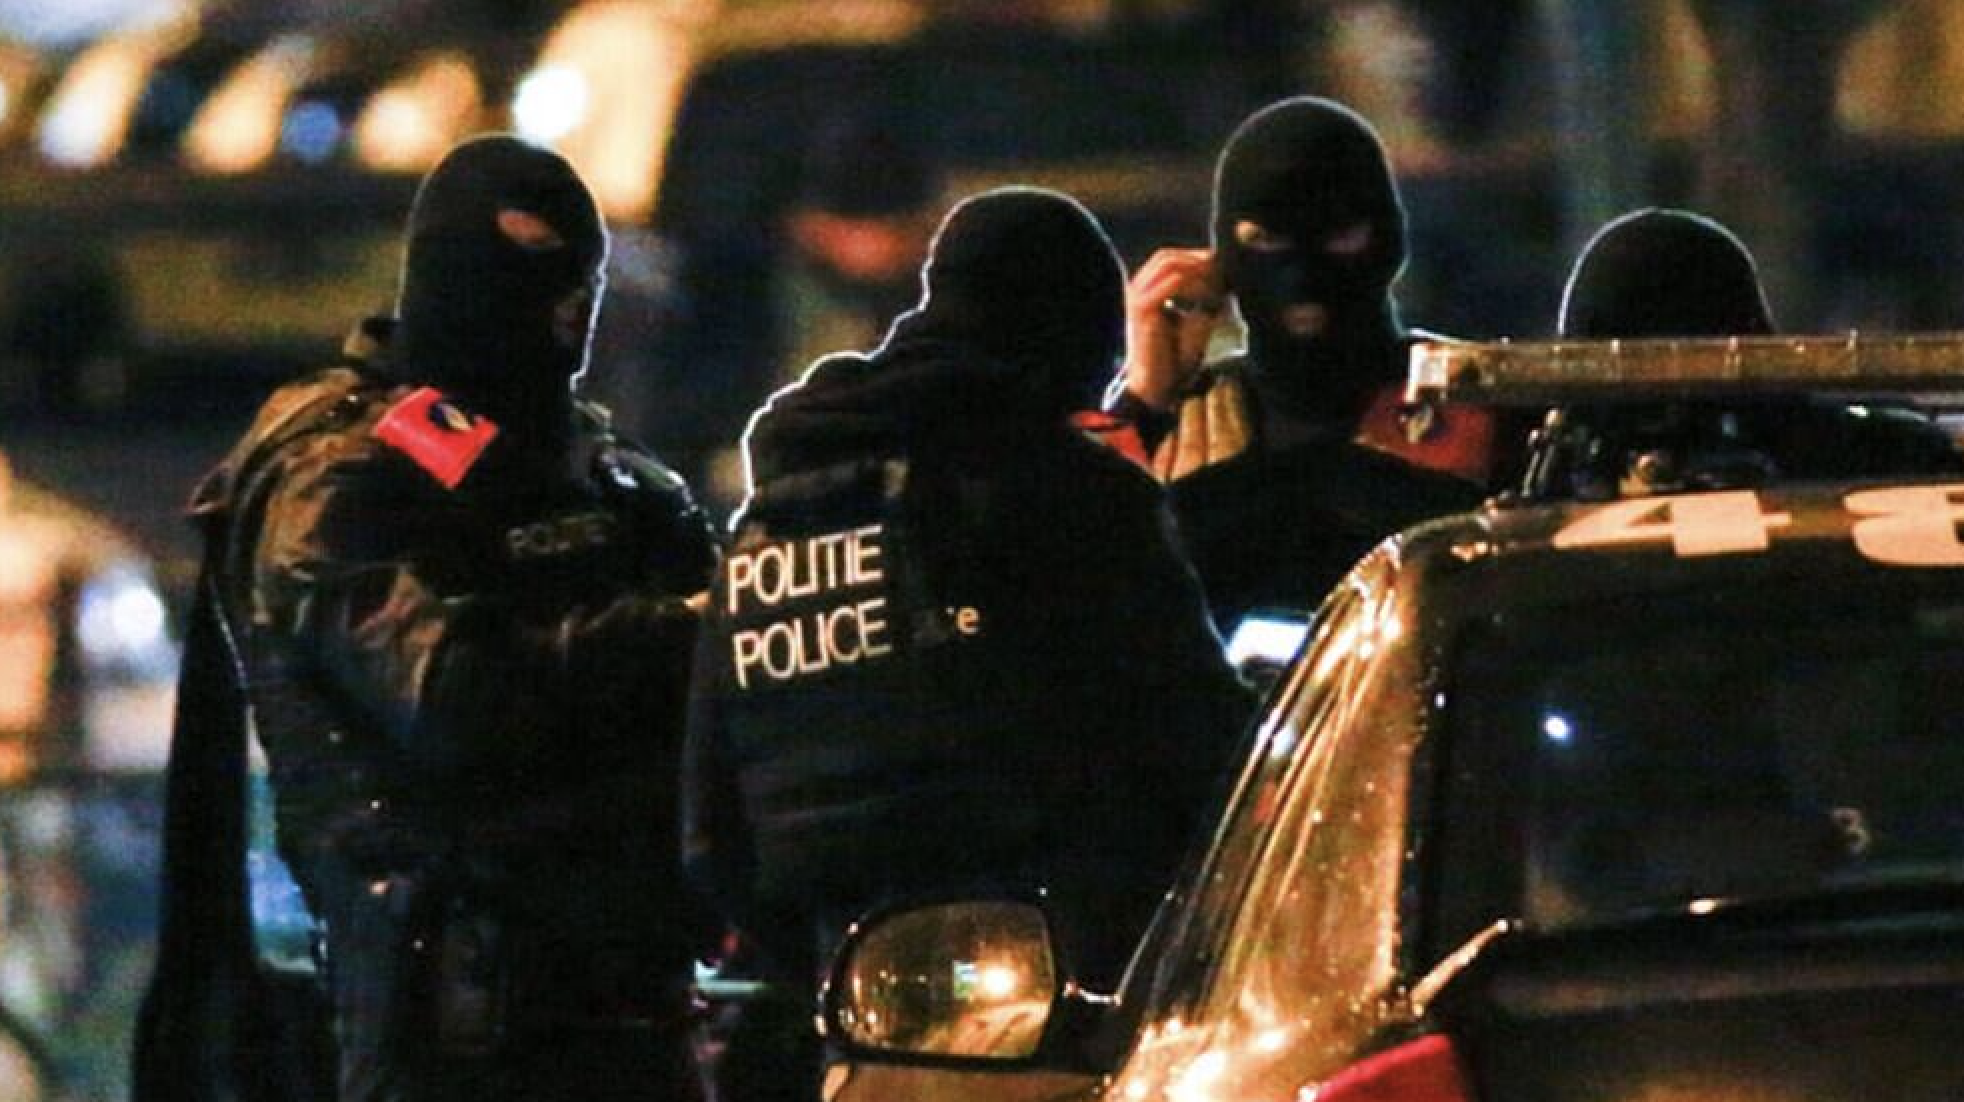 Belçika ve Fransa’daki Kürt kurumlarına operasyon: Çok sayıda gözaltı var